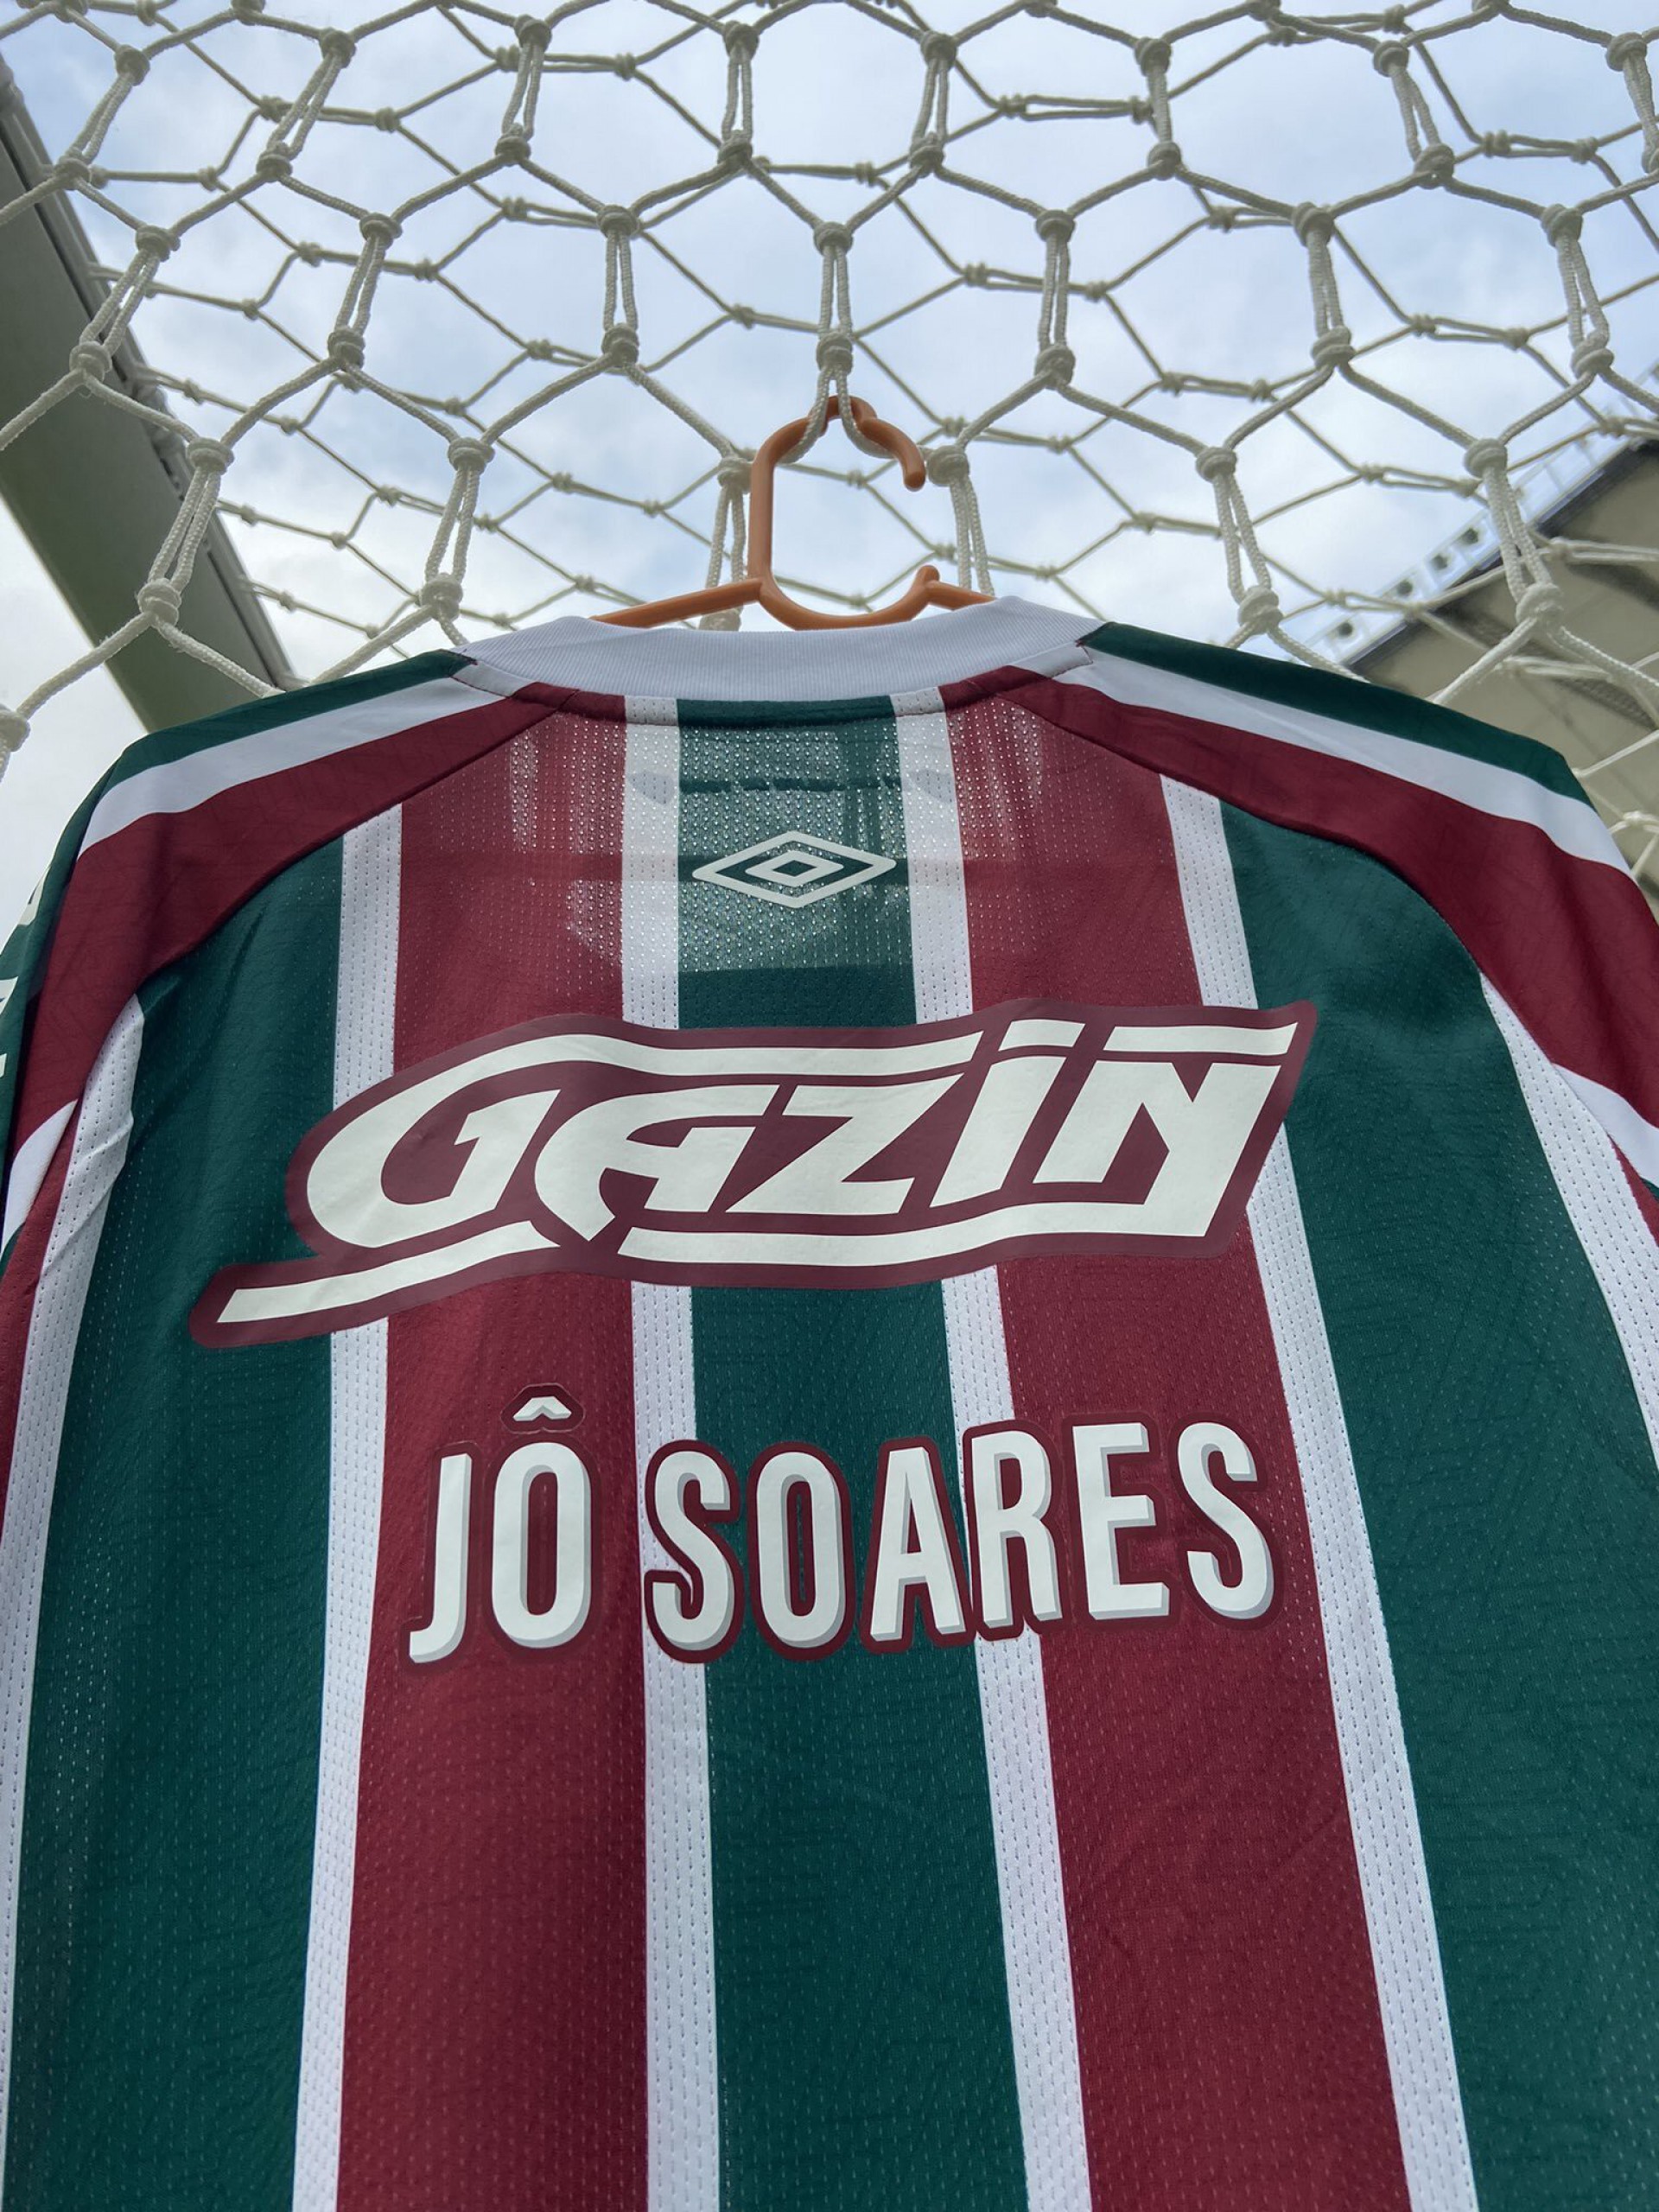 Em homenagem a Jô Soares, Fluminense entrará em campo com nome do humorista na camisa - Foto: Divulgação/Fluminense FC